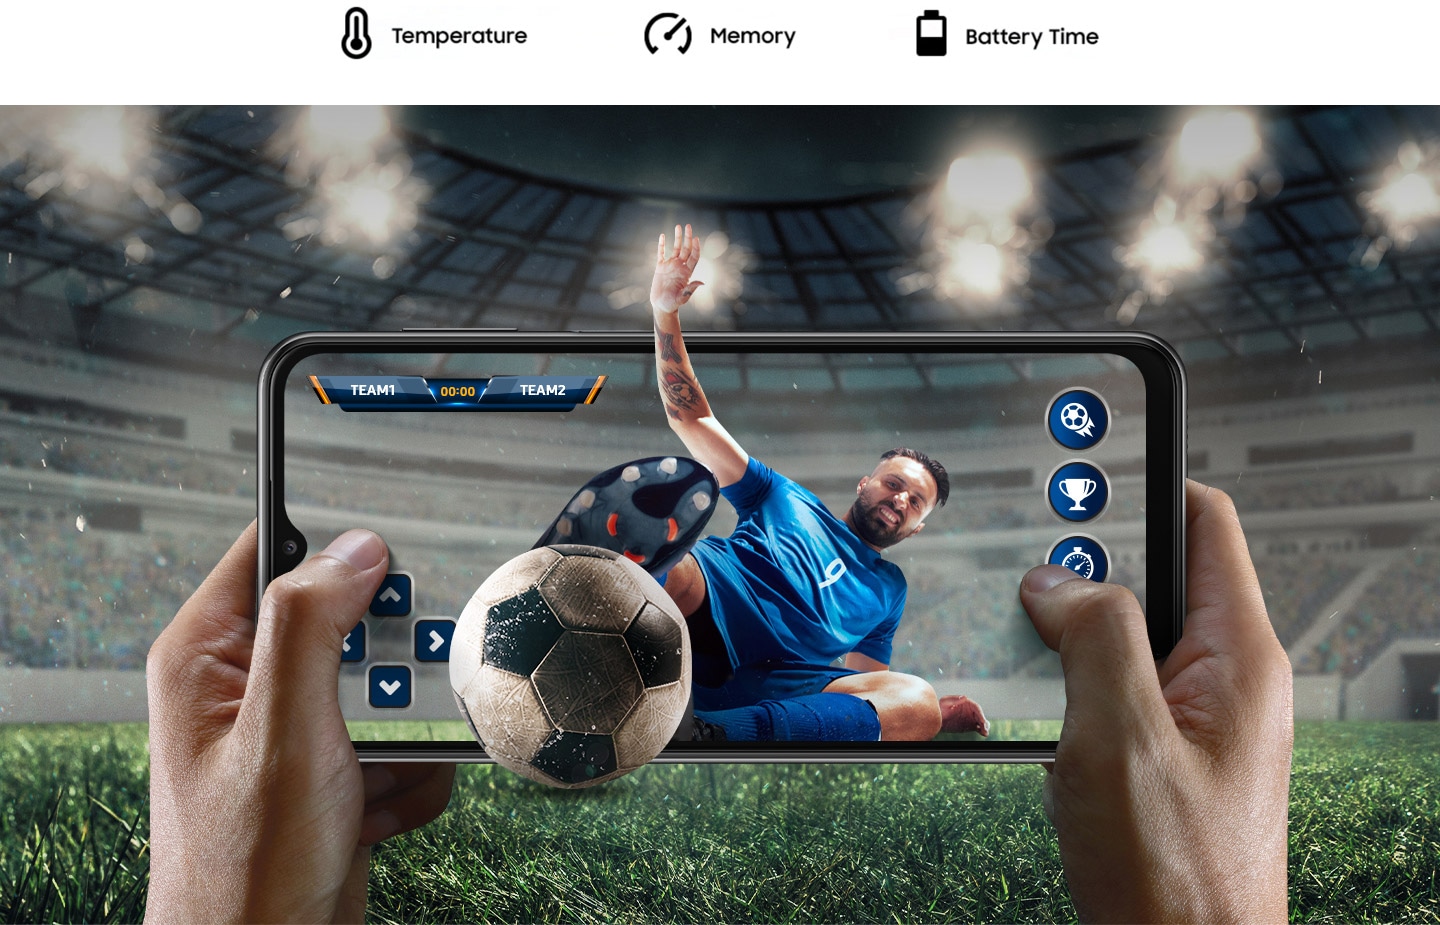 Dos manos sostienen un dispositivo Galaxy A23 5G en modo horizontal, jugando un partido de fútbol. El fondo muestra el ambiente del estadio del juego extendido hacia el exterior de la pantalla. Desde el interior de la pantalla, un jugador de fútbol se lanza a la pelota y ambos sobresalen ligeramente fuera de la pantalla. Encima, el texto dice Temperatura, Memoria y Tiempo de batería.